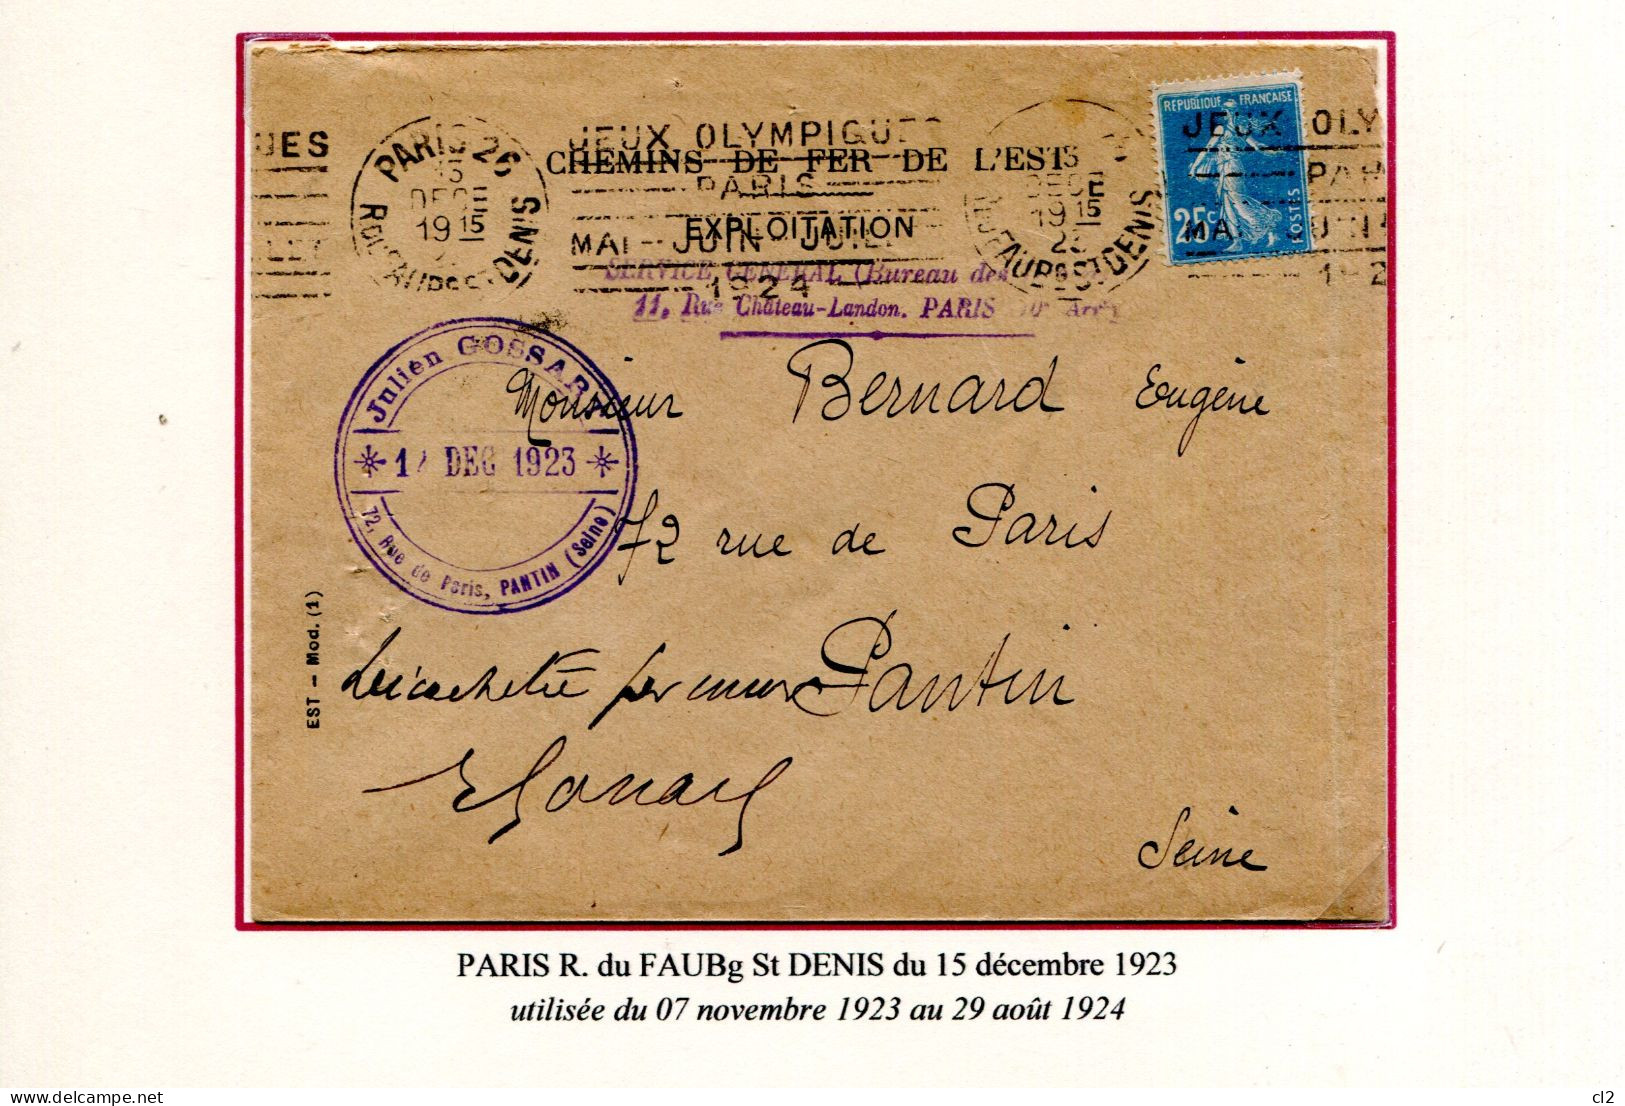 Jeux Olympiques PARIS 1924 - Oblitération Mécanique KRAG De 1ère Génération - PARIS R. Du FAUBg St DENIS - Ete 1924: Paris